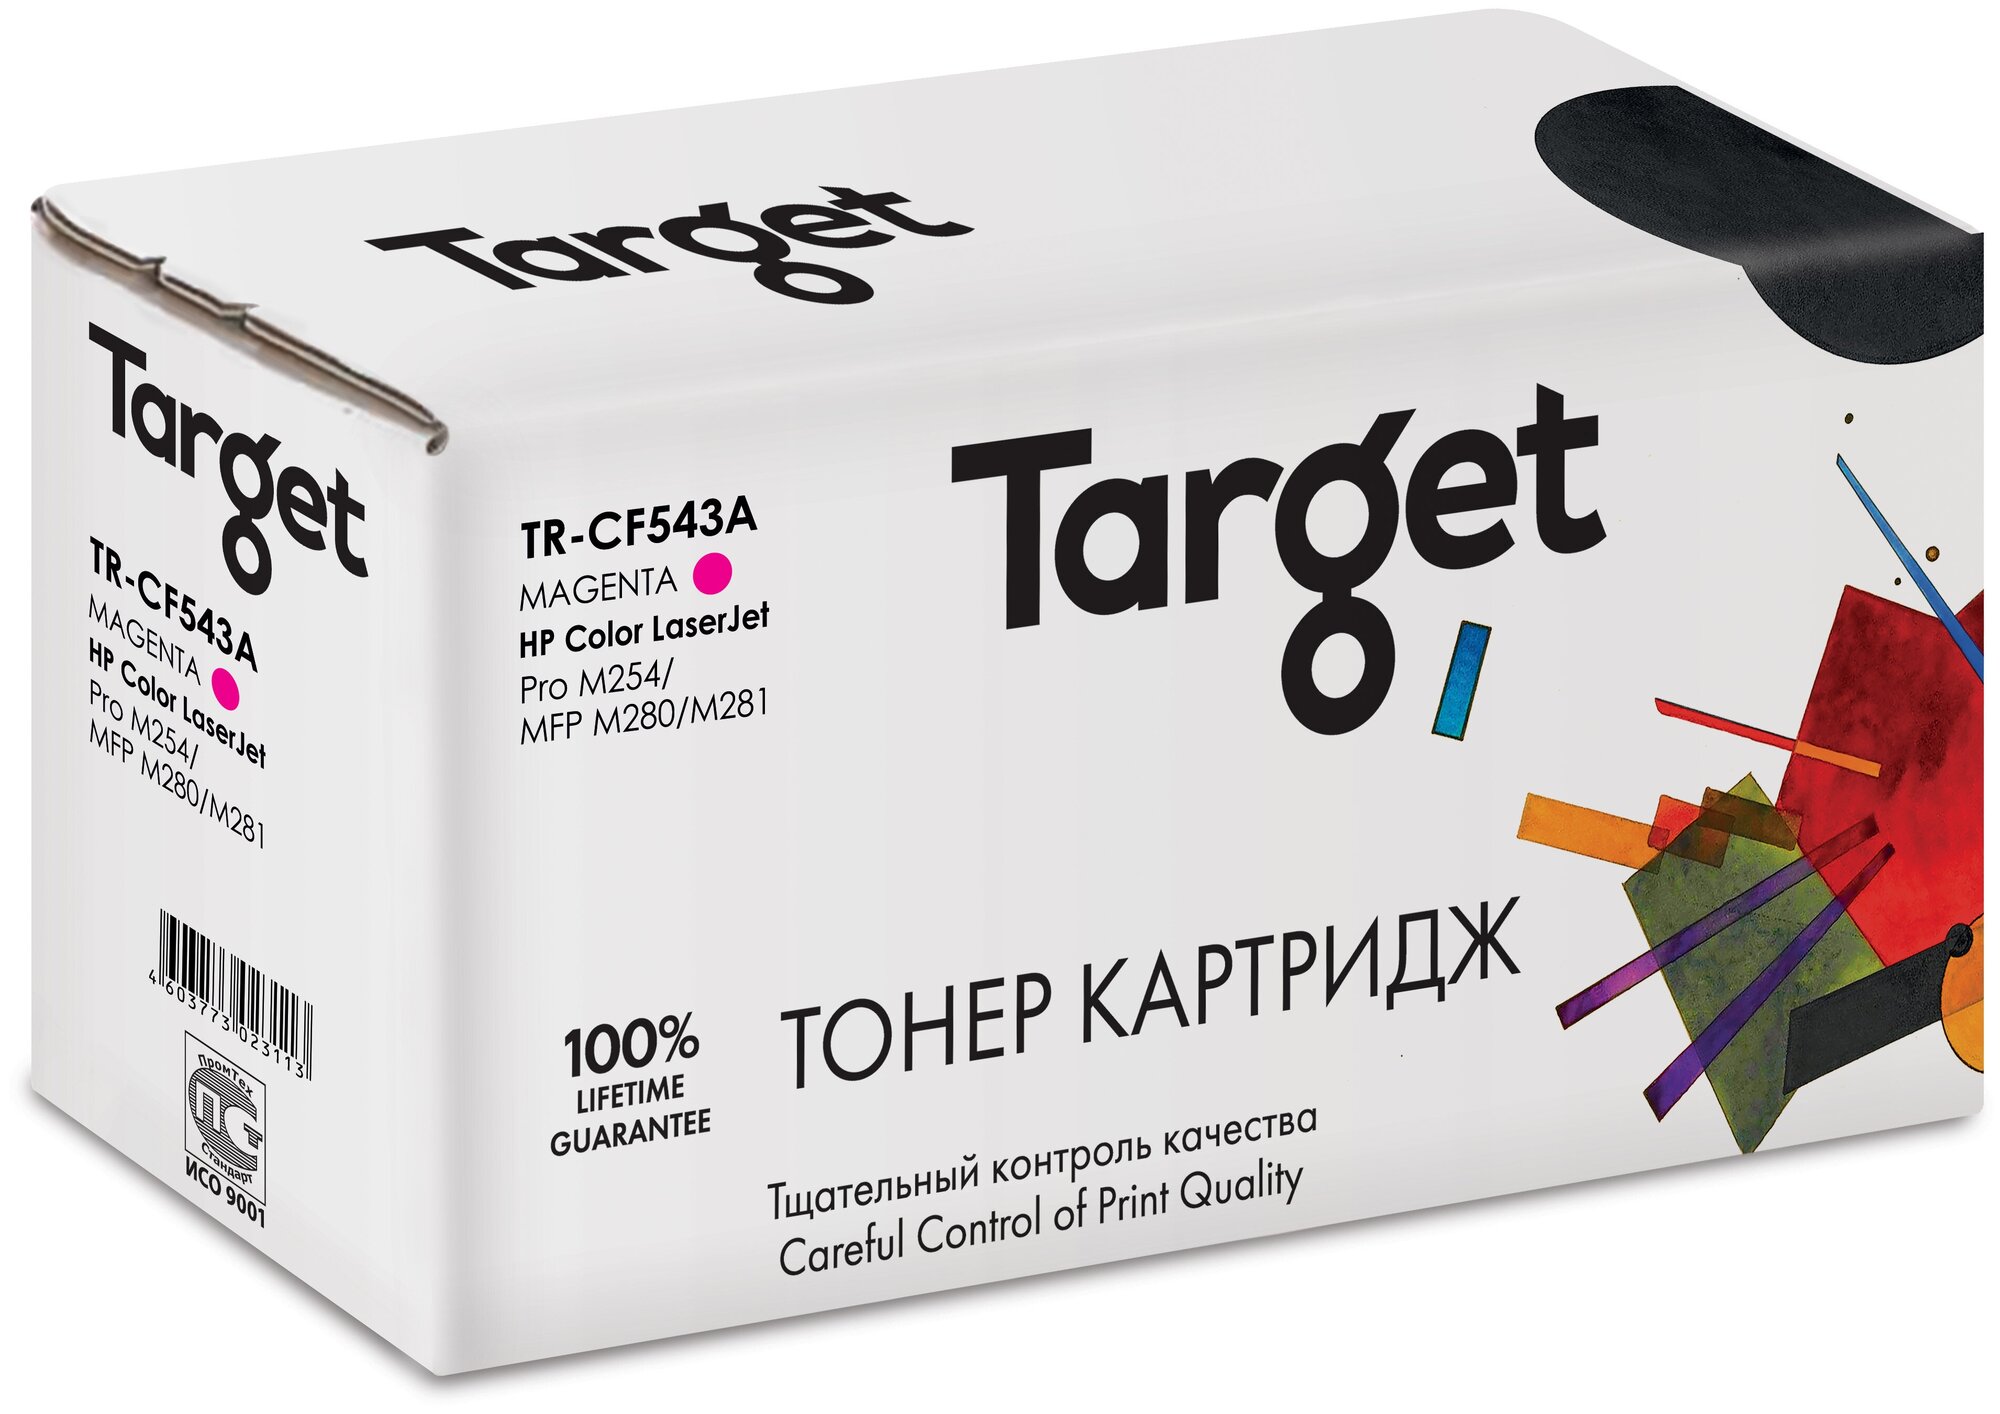 Тонер-картридж Target CF543A, пурпурный, для лазерного принтера, совместимый